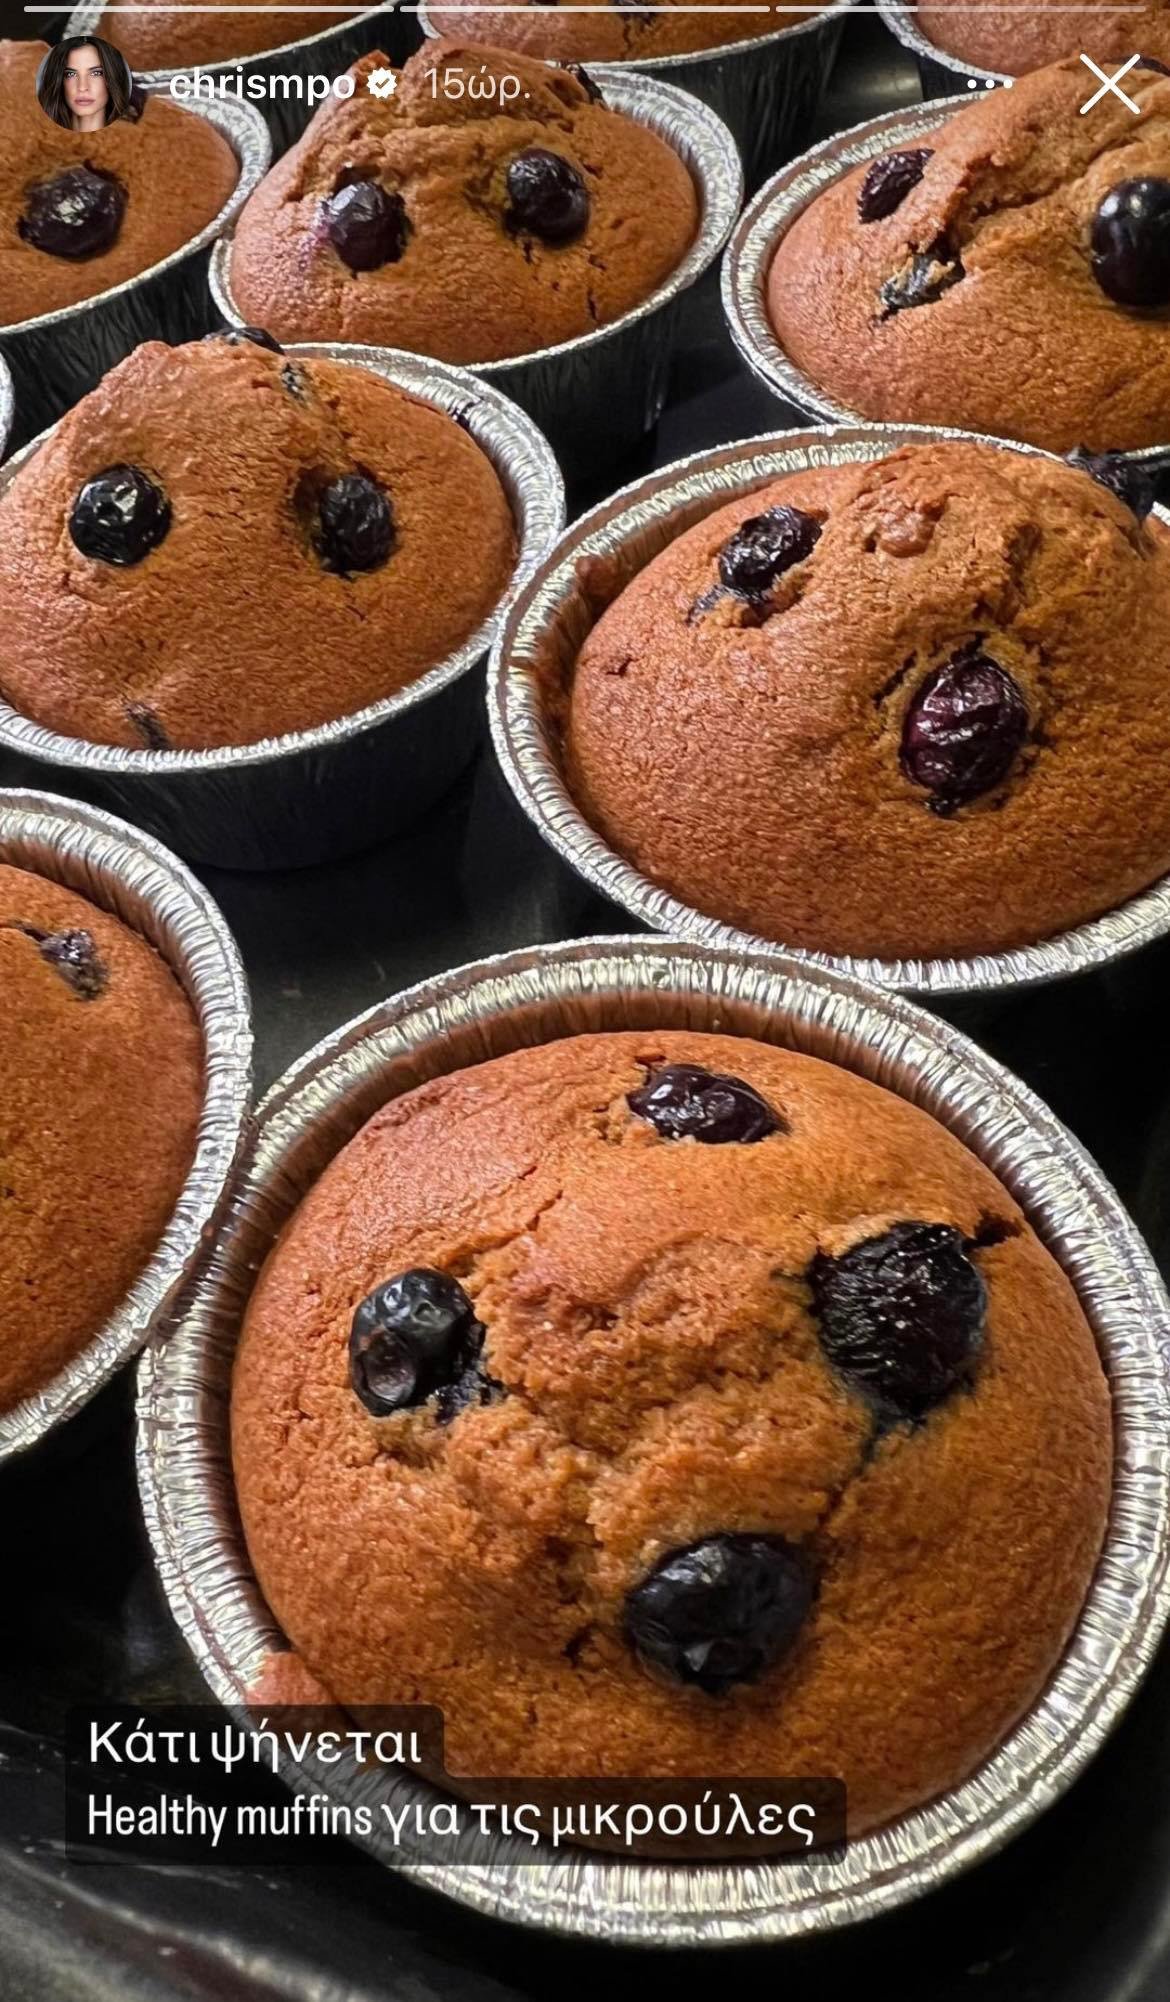 Η Χριστίνα Μπόμπα συχνά πειραματίζεται με συνταγές στην κουζίνα της, προσπαθώντας να τα συμπεριλάβει όλα στην διατροφή των παιδιών της. Και αυτή τη φορά δεν έκανε κάτι διαφορετικό και με ένα story στο Instagram ενημέρωσε τους διαδικτυακούς της ακόλουθους για τα υγιεινά muffins με blueberries που έκανε για τις μικρούλες της. Το story που ανέβασε η Χριστίνα Μπόμπα στον προσωπικό της λογαριασμό στο Instagram: Εδώ να σημειωθεί ότι η Χριστίνα Μπόμπα είναι λάτρης της υγιεινής διατροφής και δεν είναι λίγες οι φο